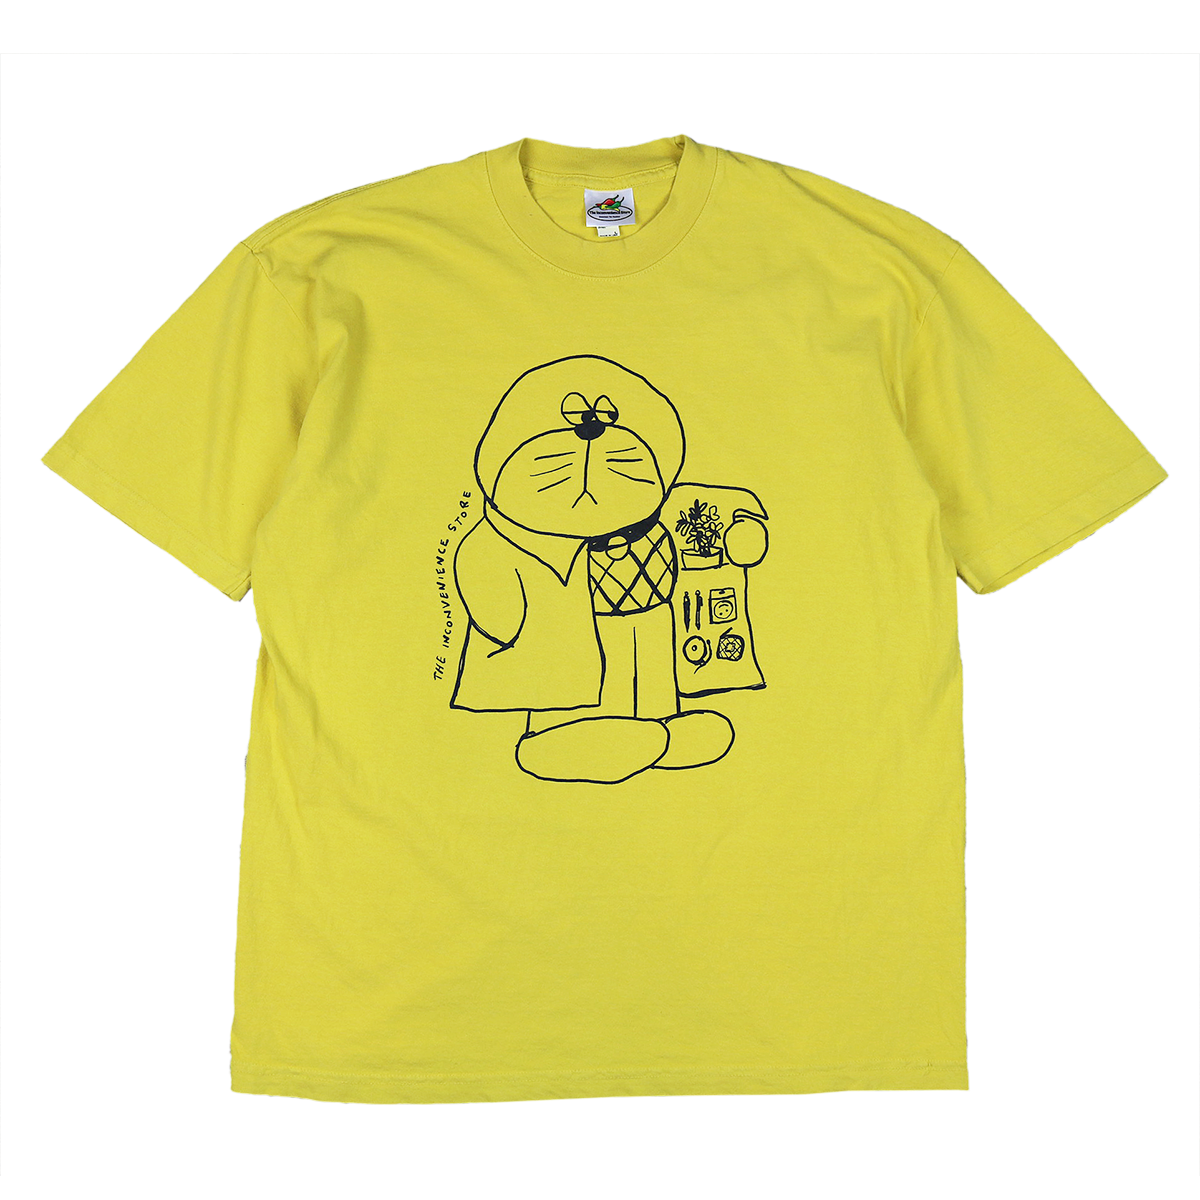 Gray Market T-shirt - Mustard